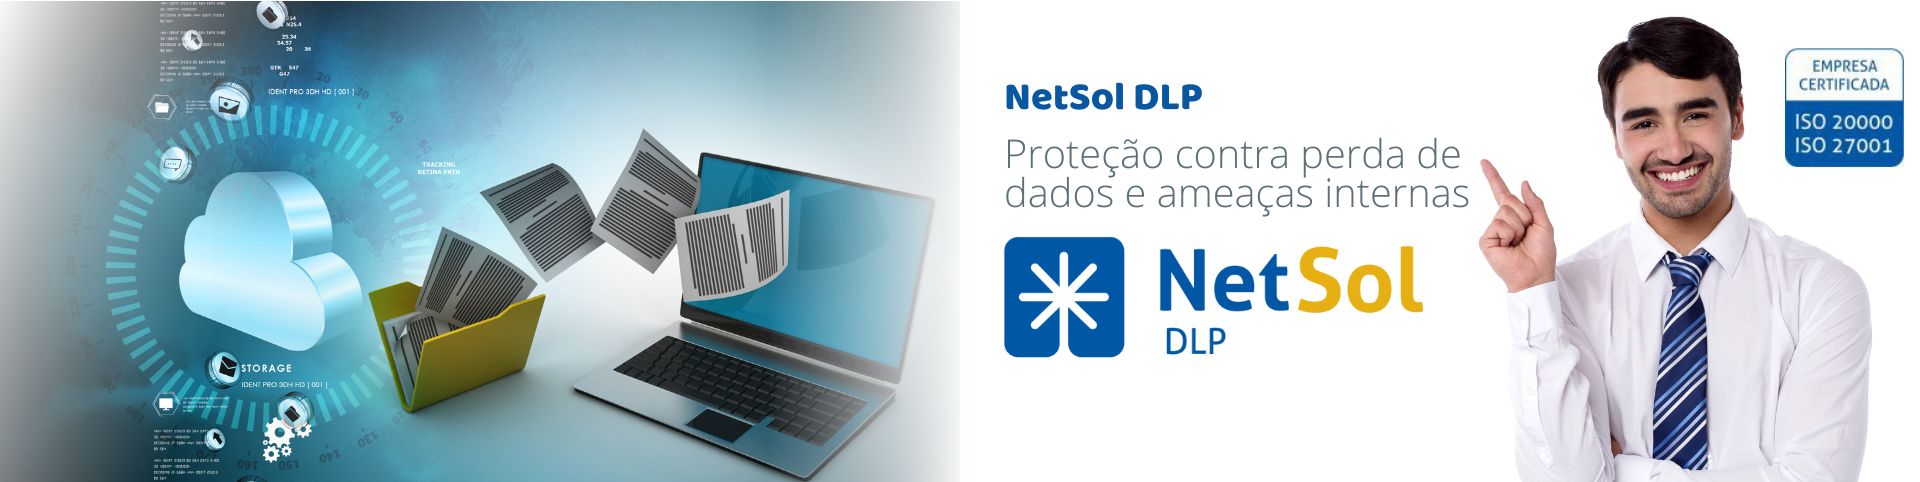 NetSol_DLP